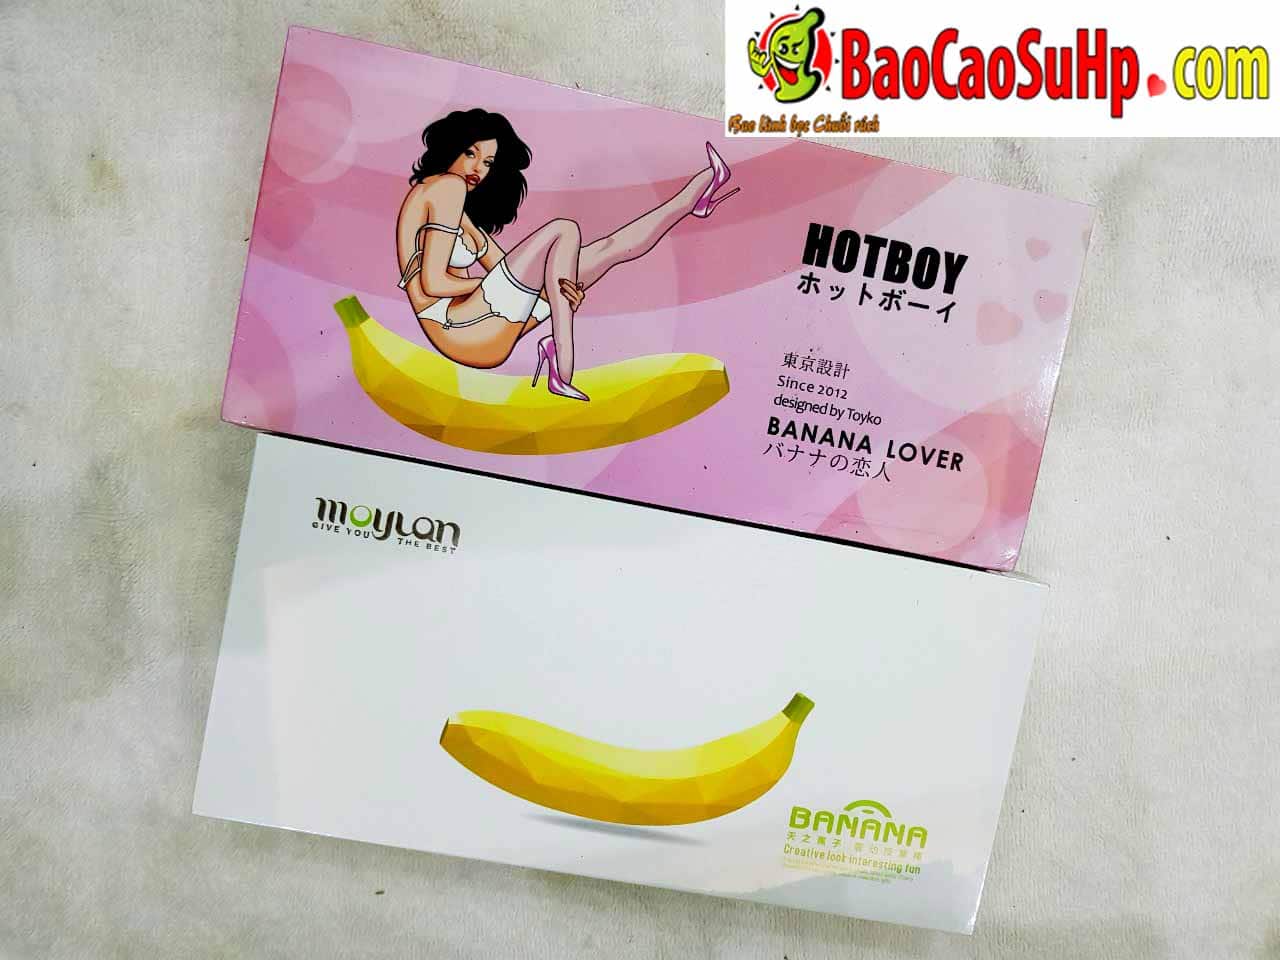 20181105231119 3542543 sextoy duong vat banana hotboy rung phat nhiet - Top dương vật giả chính hãng được bán tại Hải Phòng